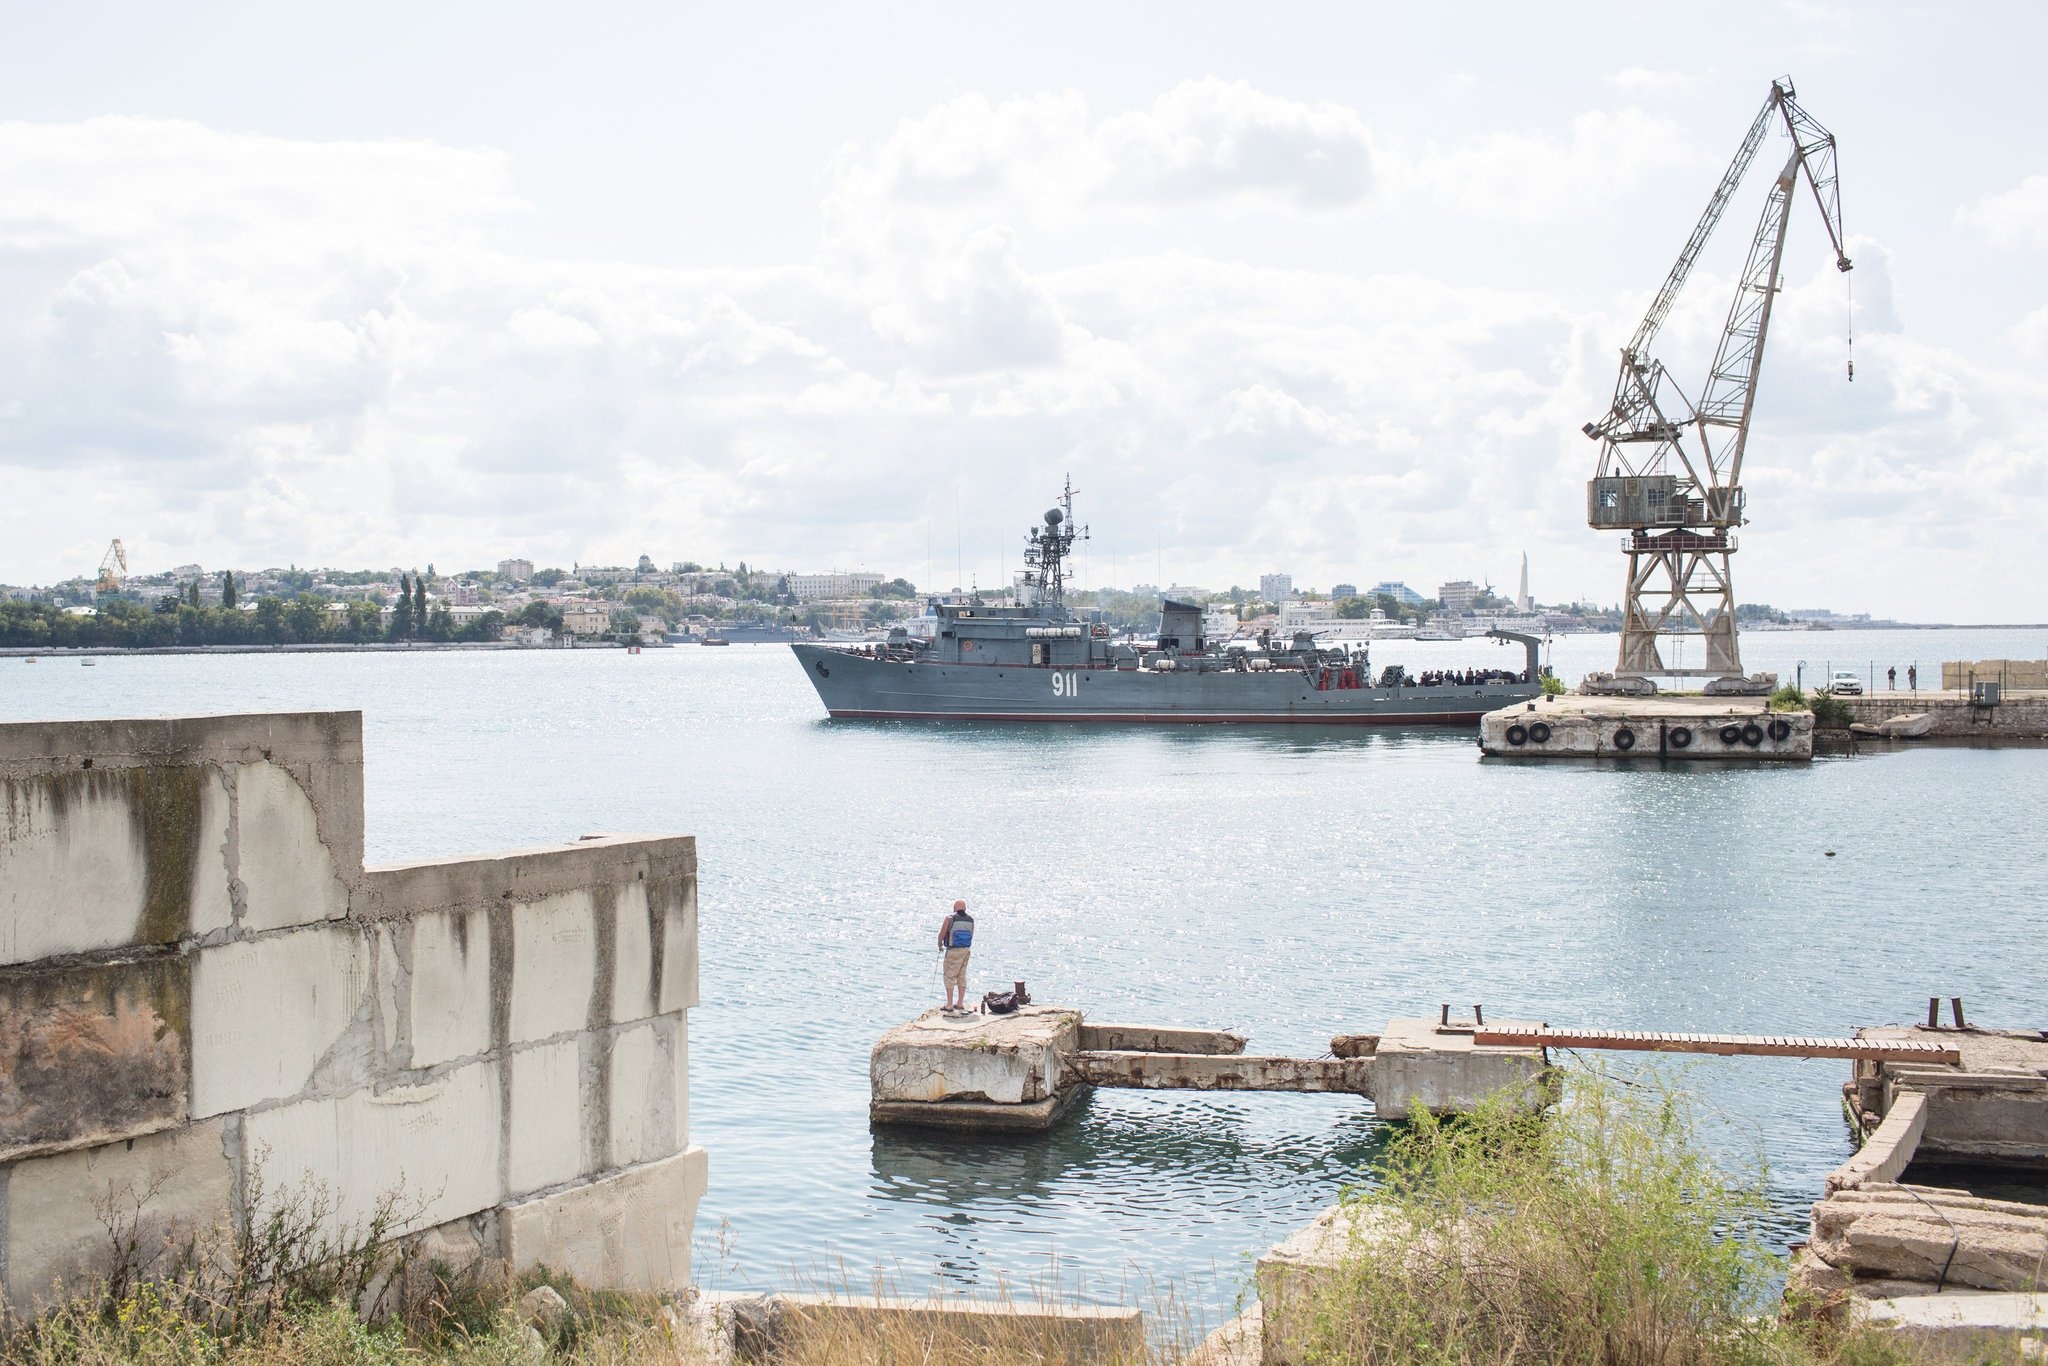 Човен ВМФ Росії в севастопольському порту. Повернення Криму радо віталося як давно необхідний крок для повернення втраченої могутності